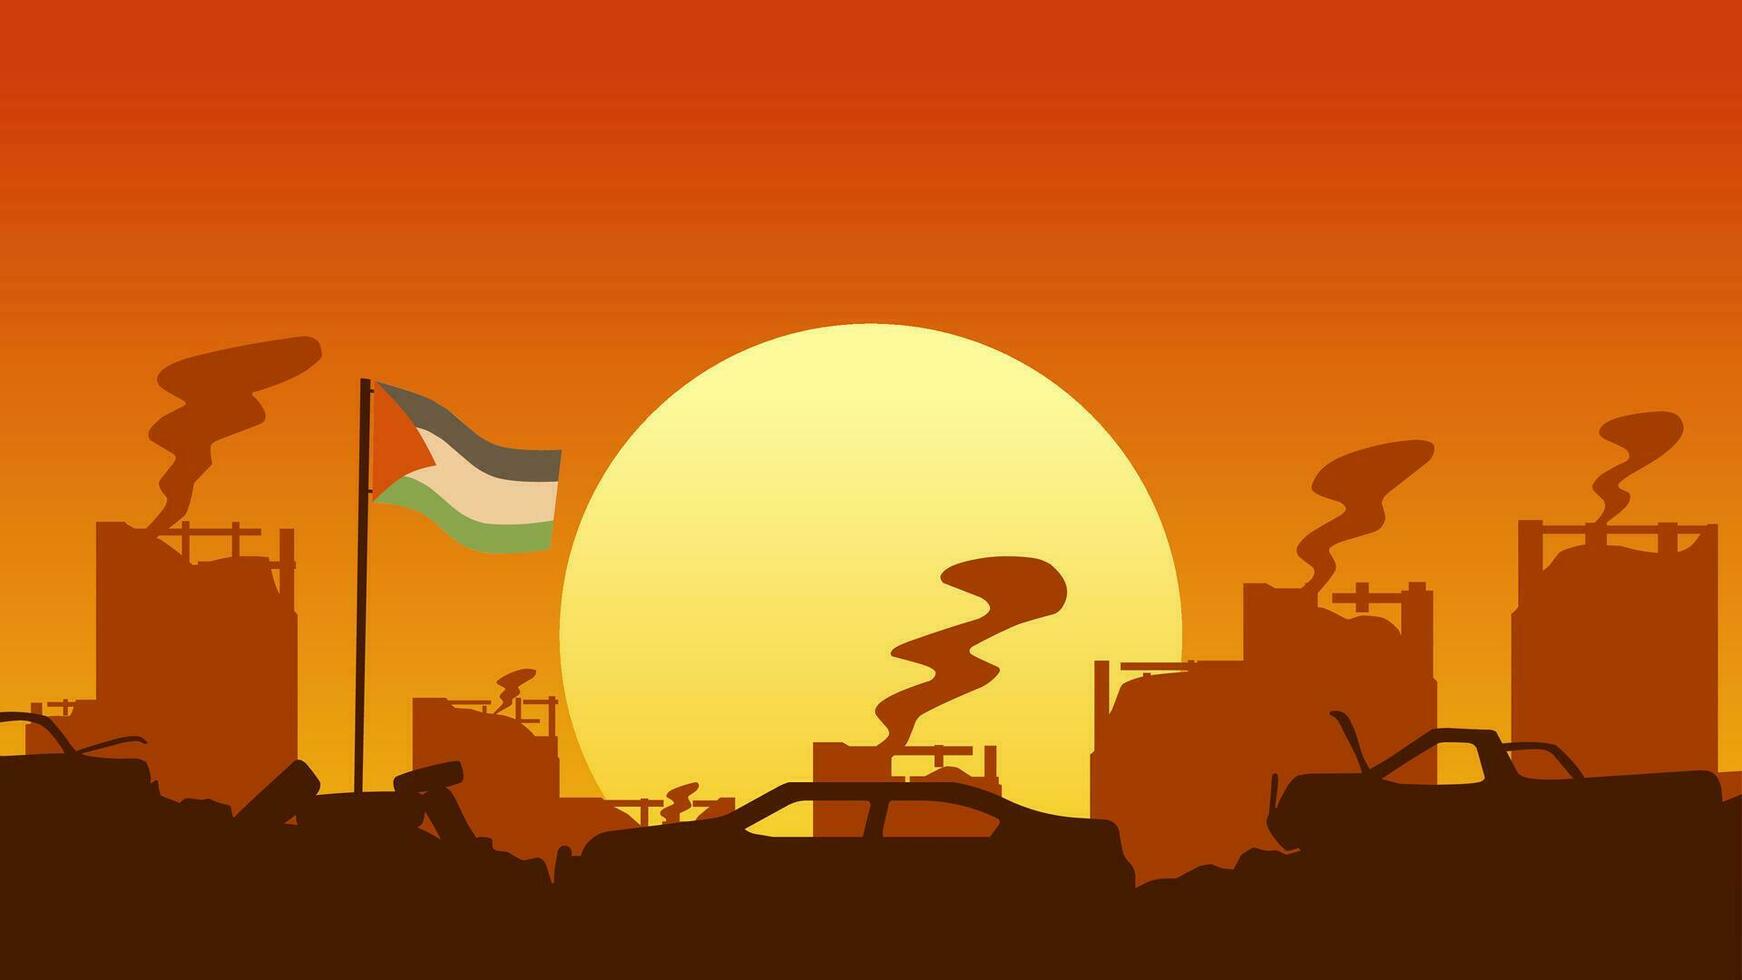 Palestina landschap vector illustratie. silhouet van geruïneerd stad in zonsondergang met Palestina vlag. Palestina illustratie voor achtergrond, behang, kwestie en conflict